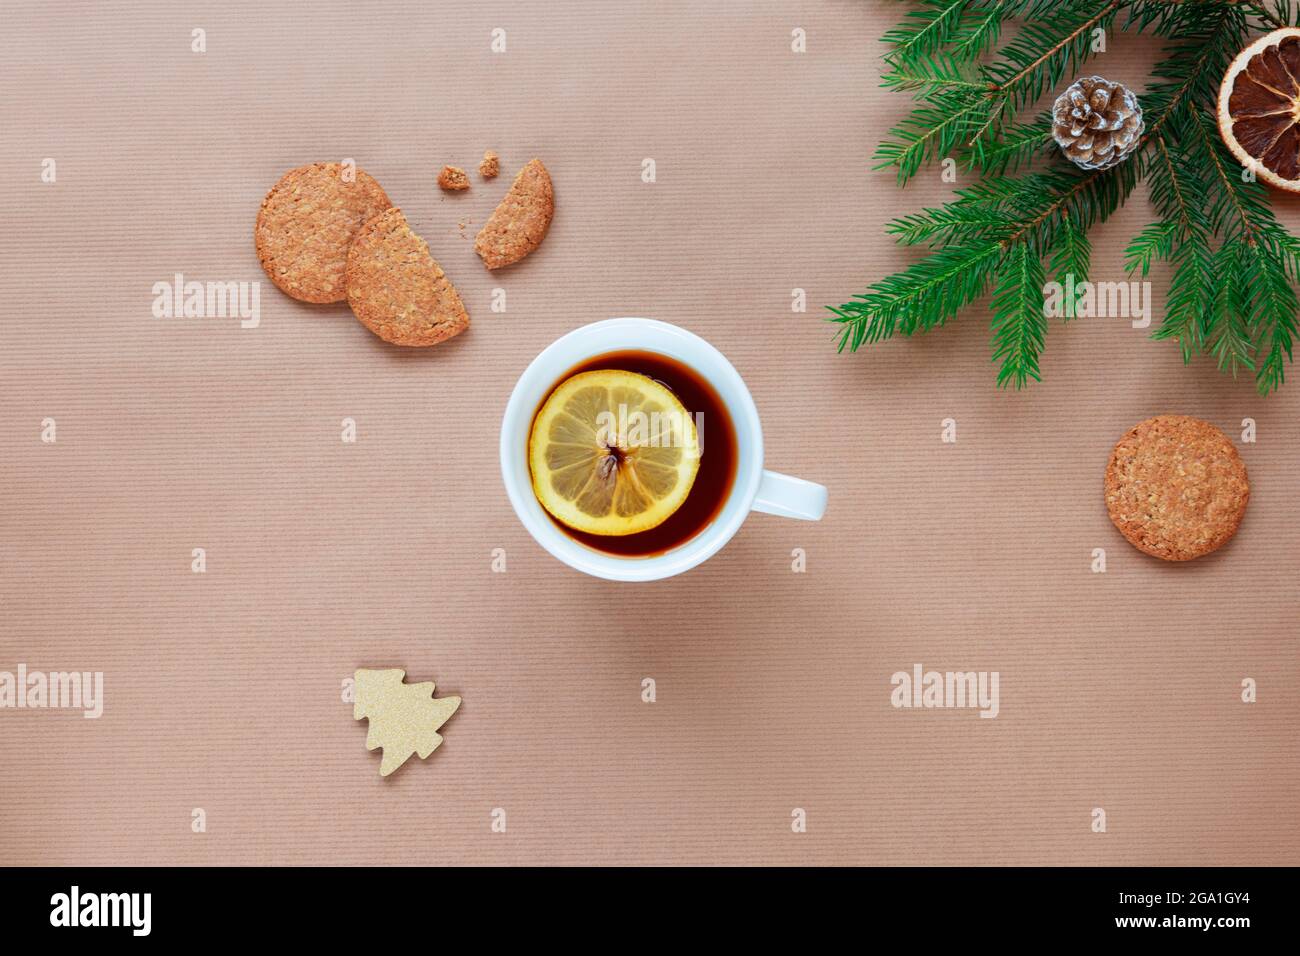 Rami dell'albero di Natale, tazza di tè con limone e biscotti su sfondo beige. Vista dall'alto, disposizione piatta, spazio per la copia. Foto Stock